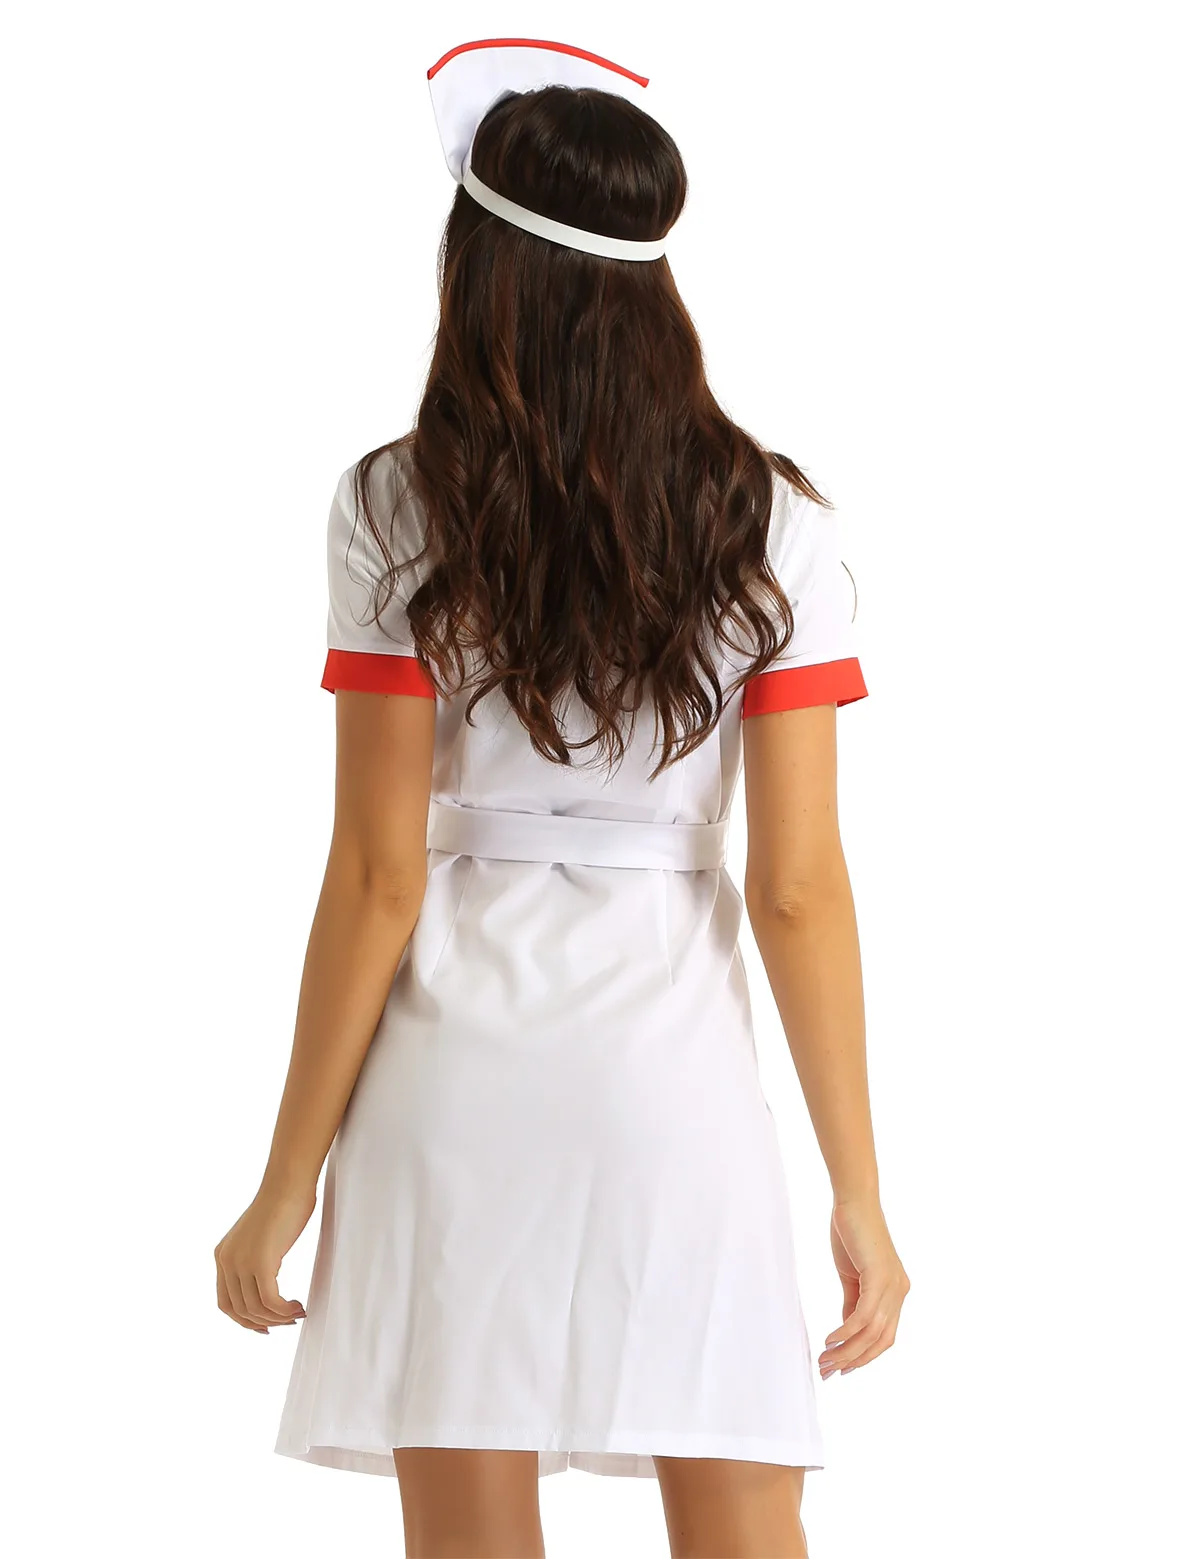 Femmes Adultes Infirmière Médecin Déguisement Halloween Tenue De Fête Jeu de rôle Uniforme